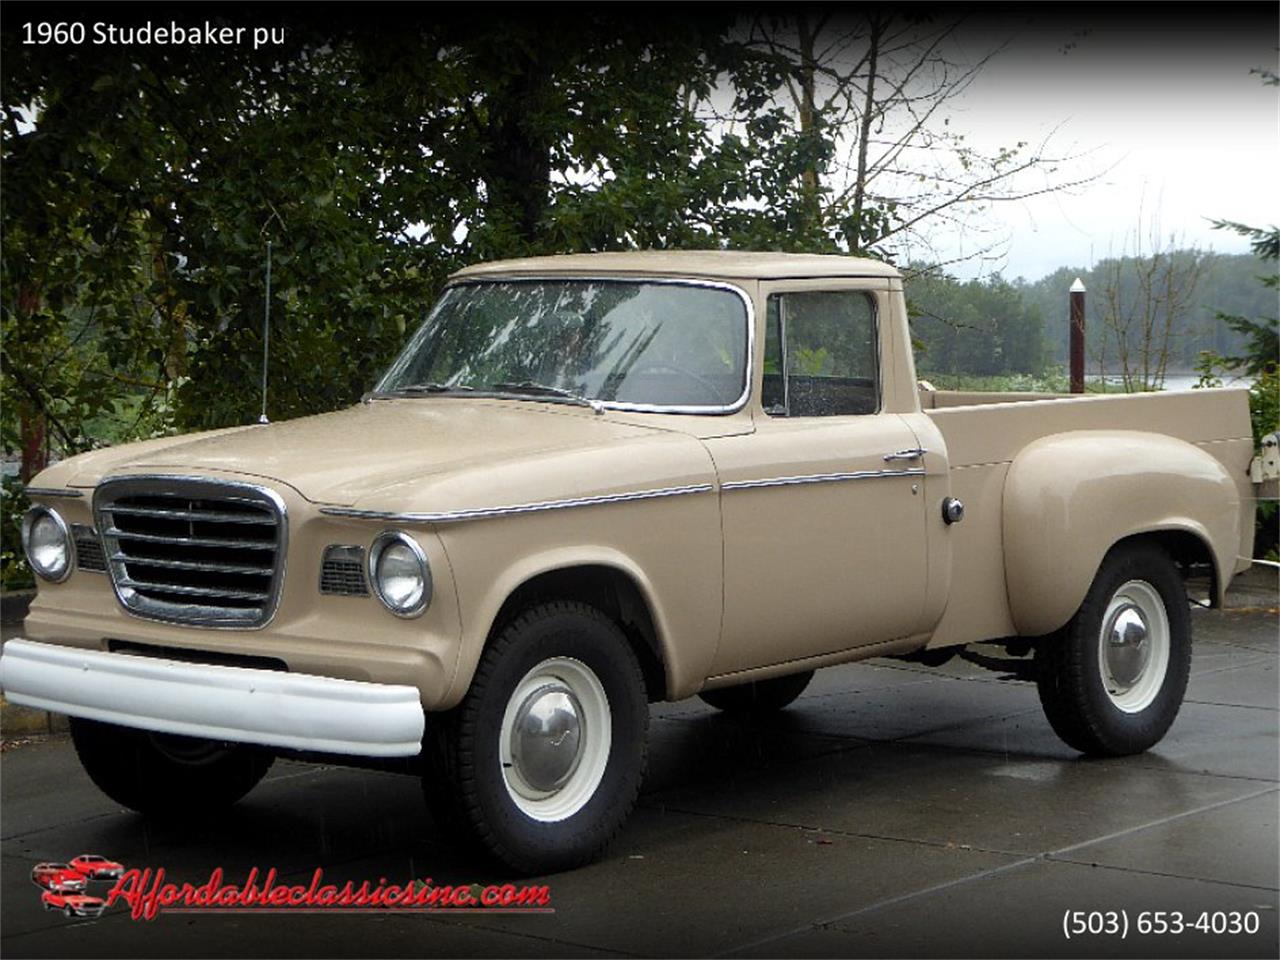 1960 Studebaker Pickup for sale in Gladstone, OR